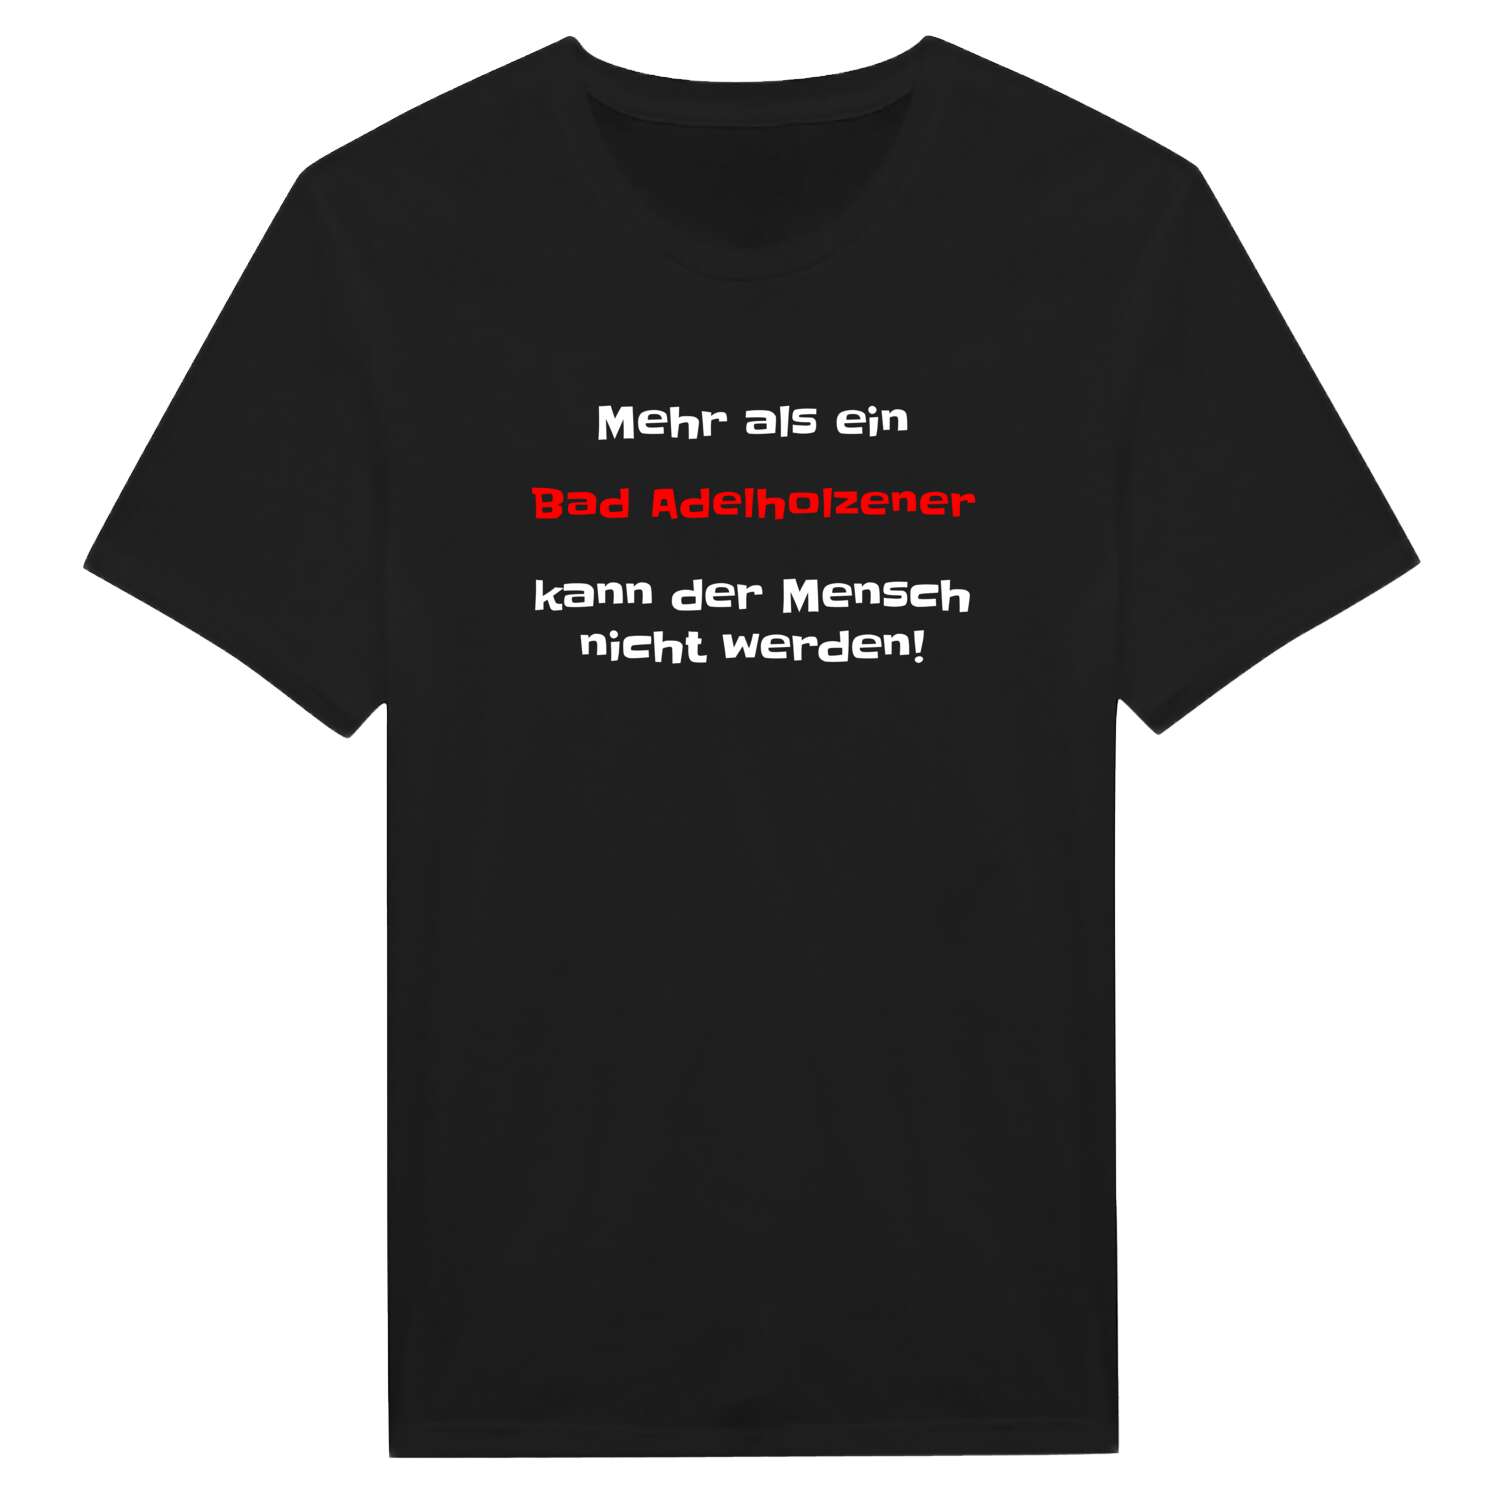 Bad Adelholzen T-Shirt »Mehr als ein«